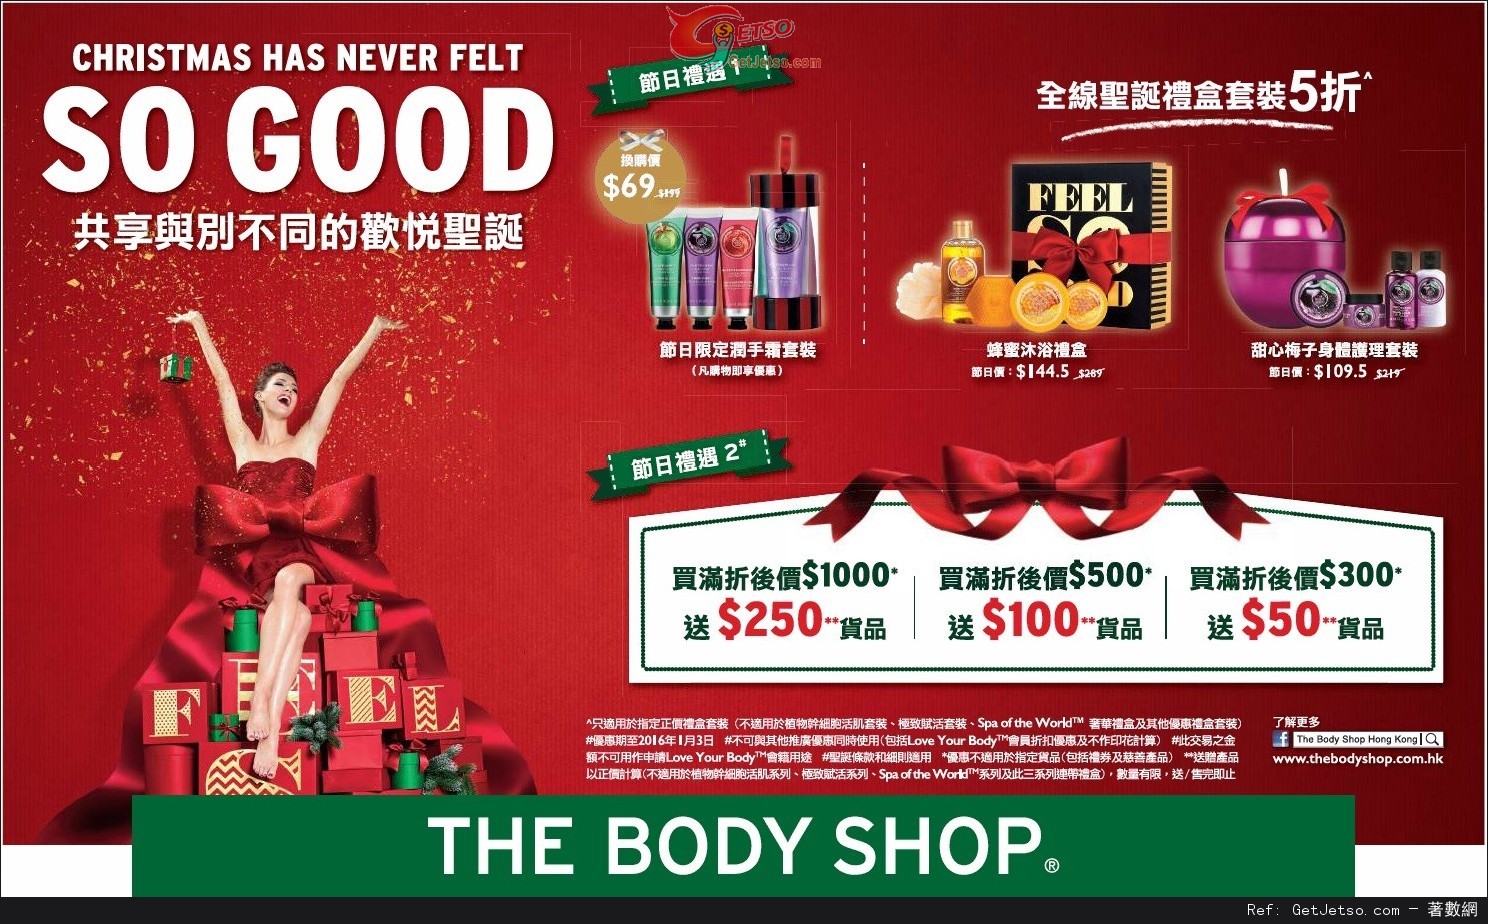 The Body Shop 全線聖誕禮盒套裝半價優惠(至16年1月3日)圖片1